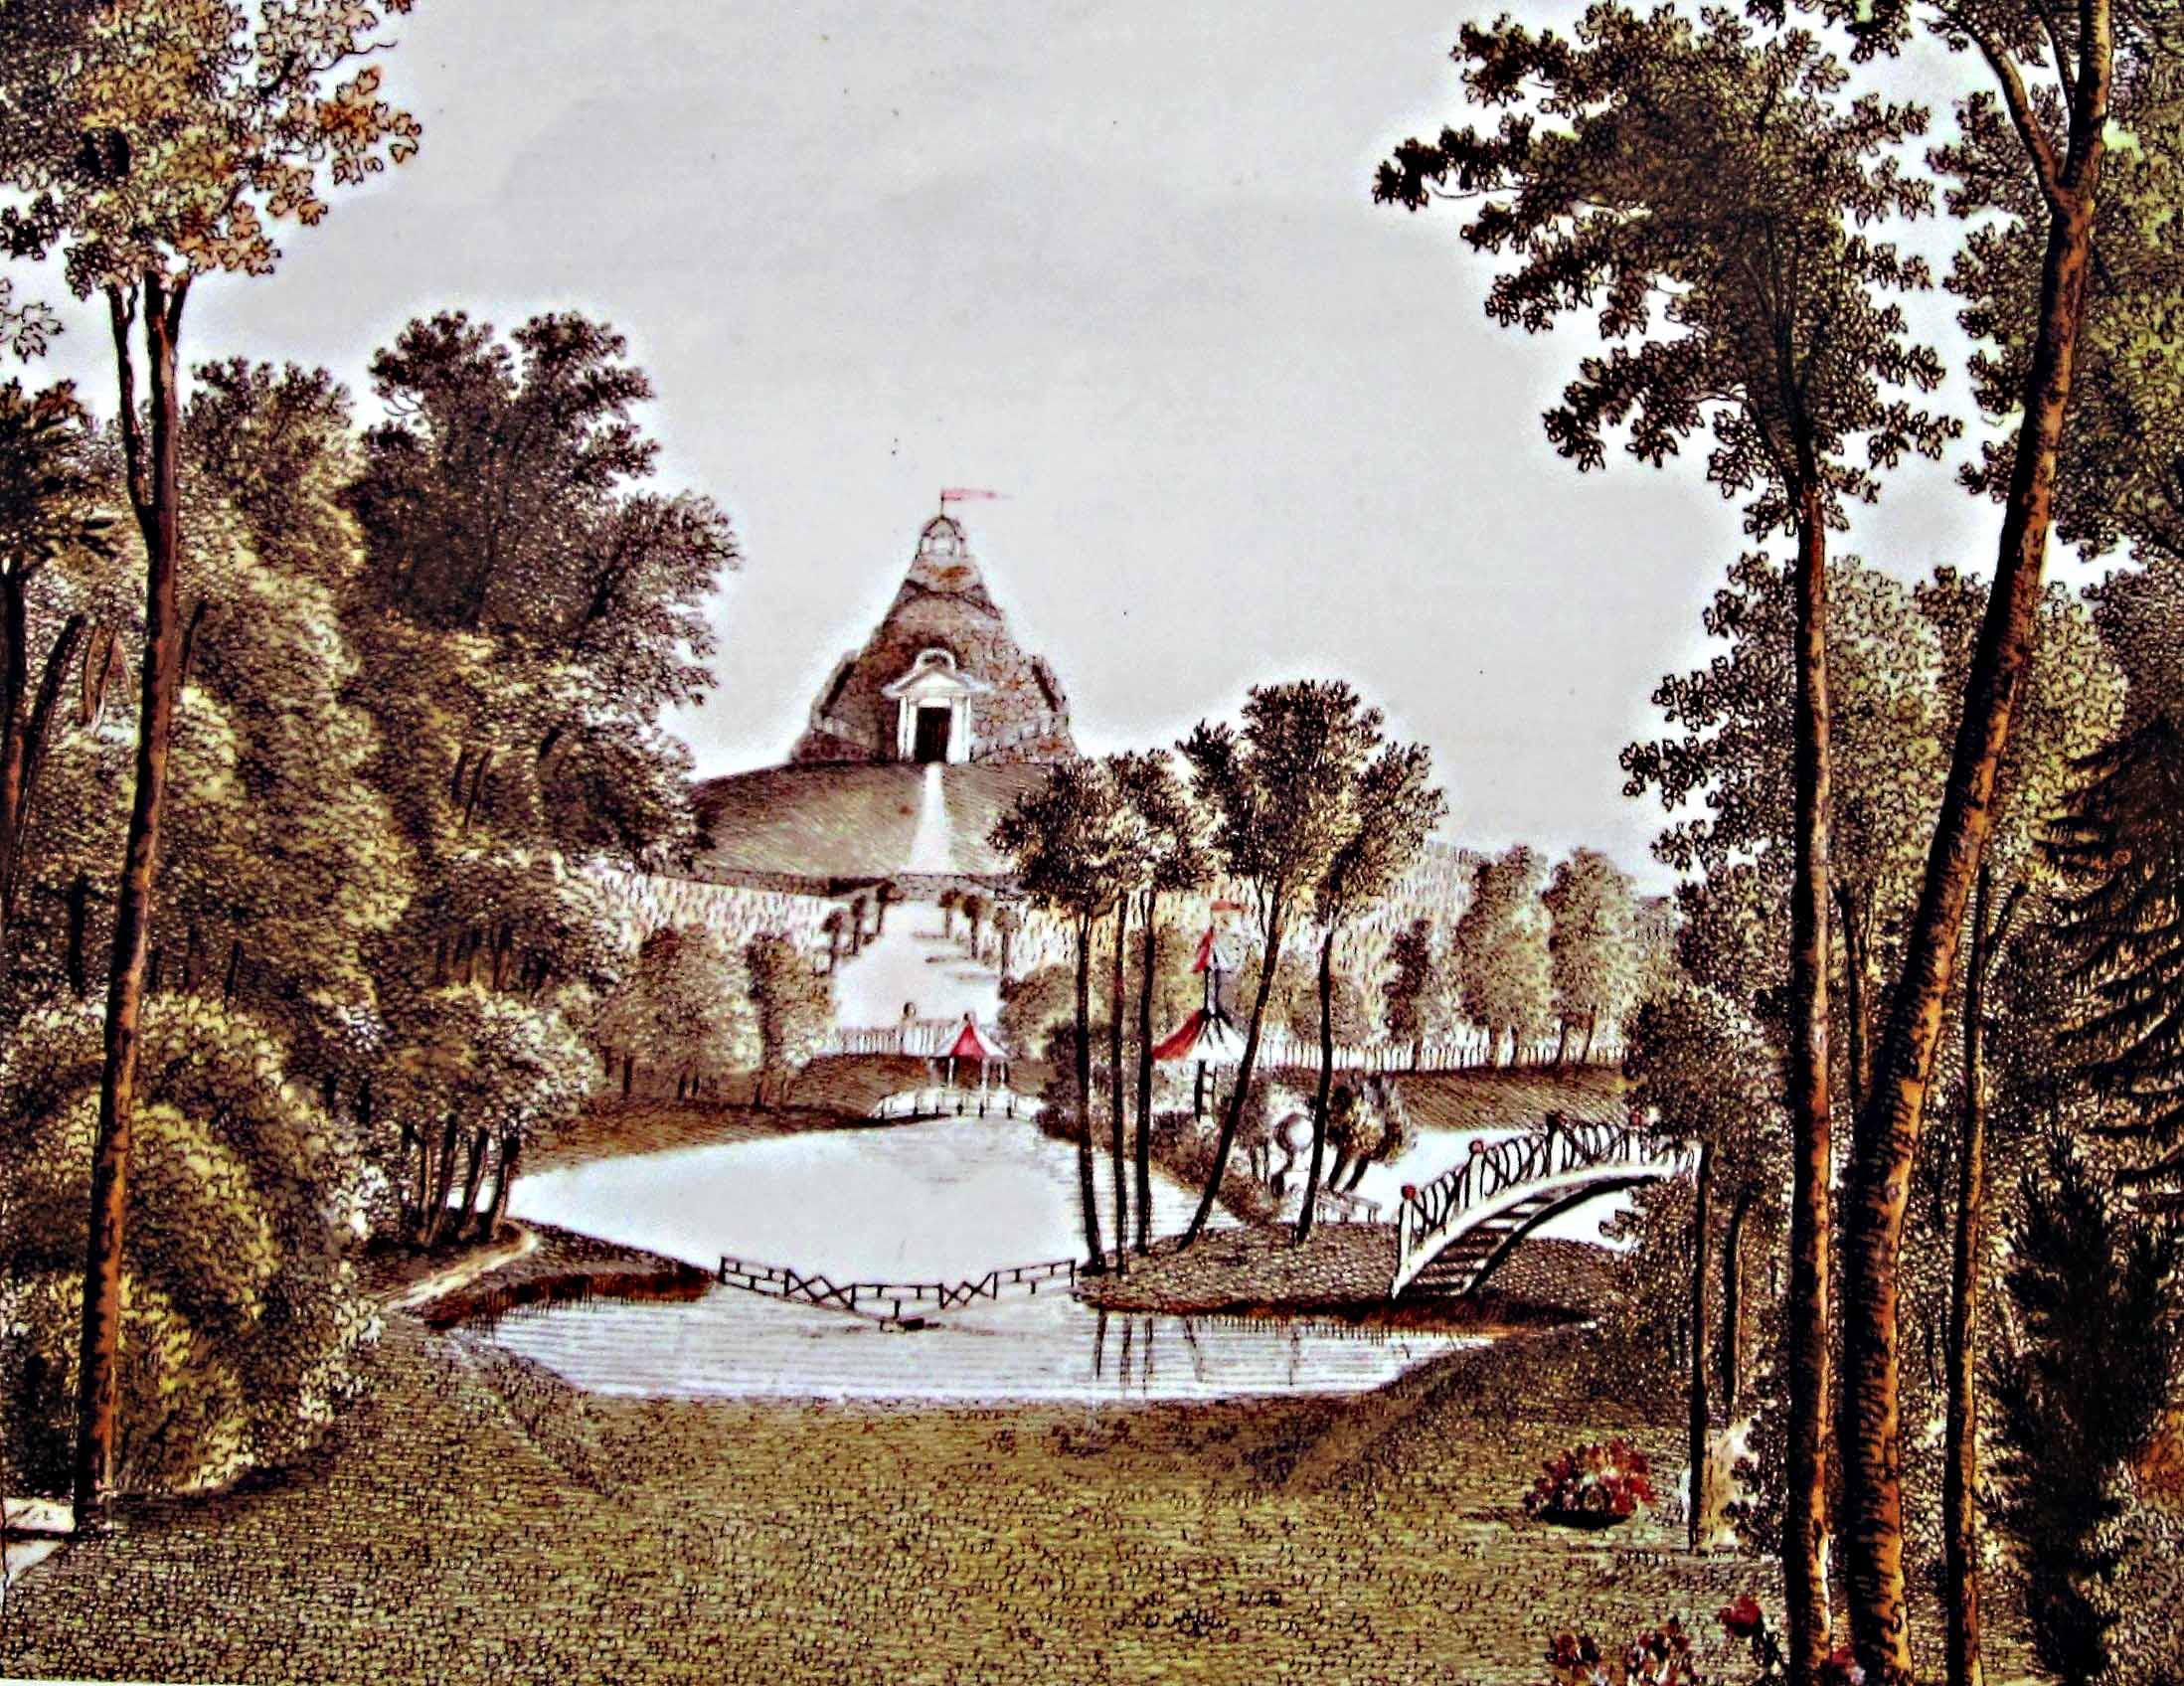 Historische Ansicht: die Pyramide Garzau oberhalb des damals noch vorhandenen Kleinen Haussees. Kupferstich um 1790, Ausschnitt, Künstler unbekannt.

